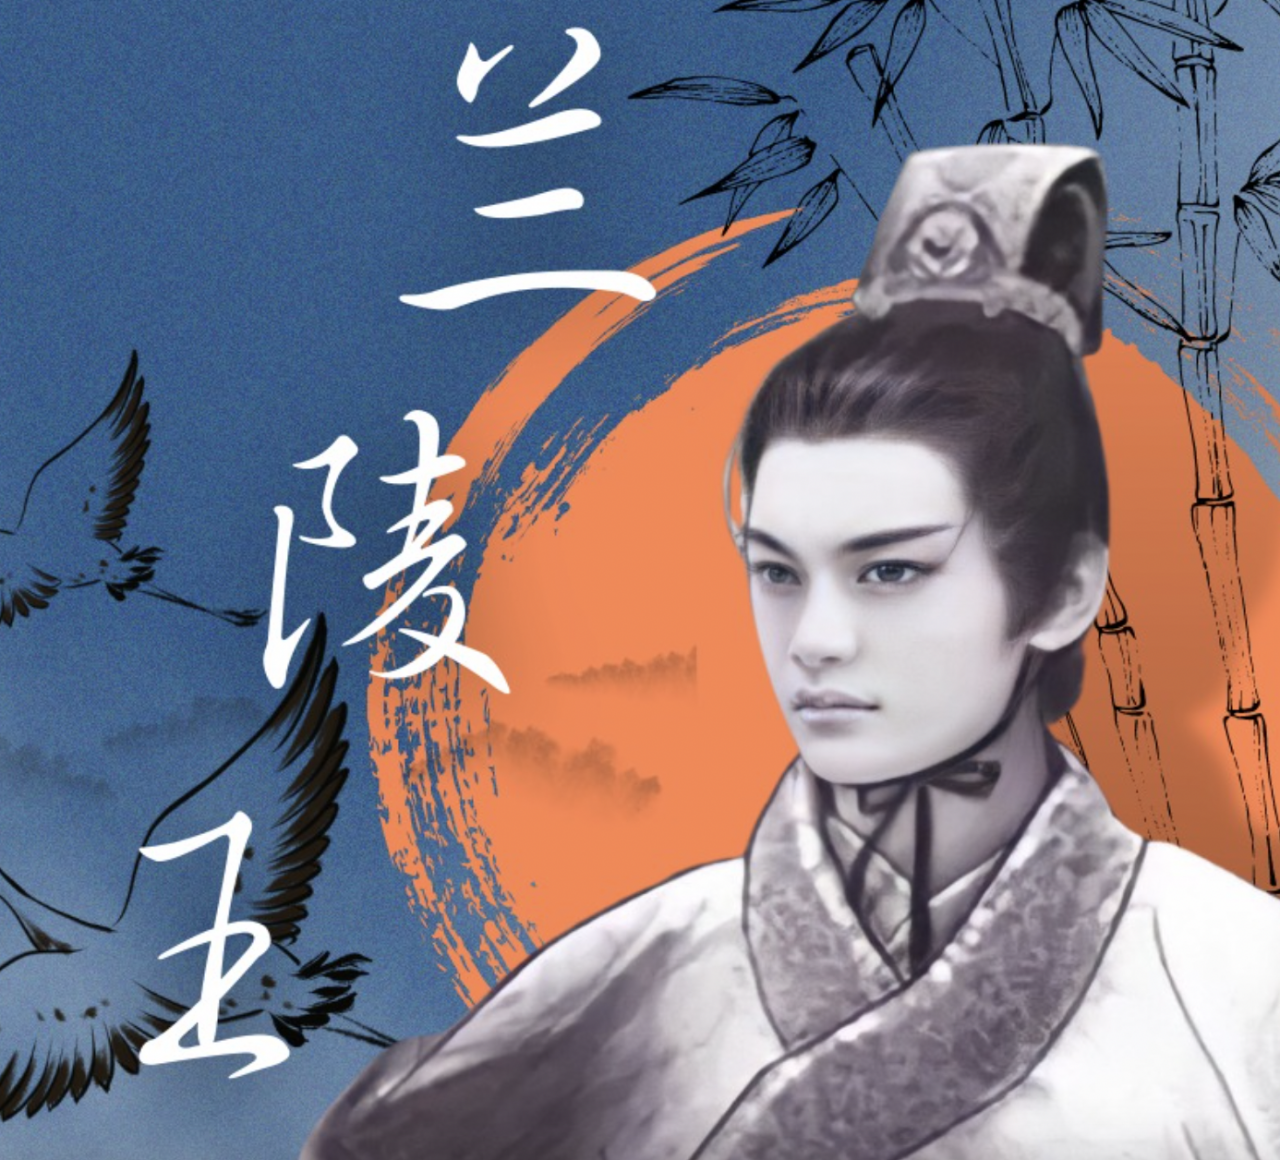 “Quỷ tướng quân” Lan Lăng Vương. (Ảnh: Baidu)